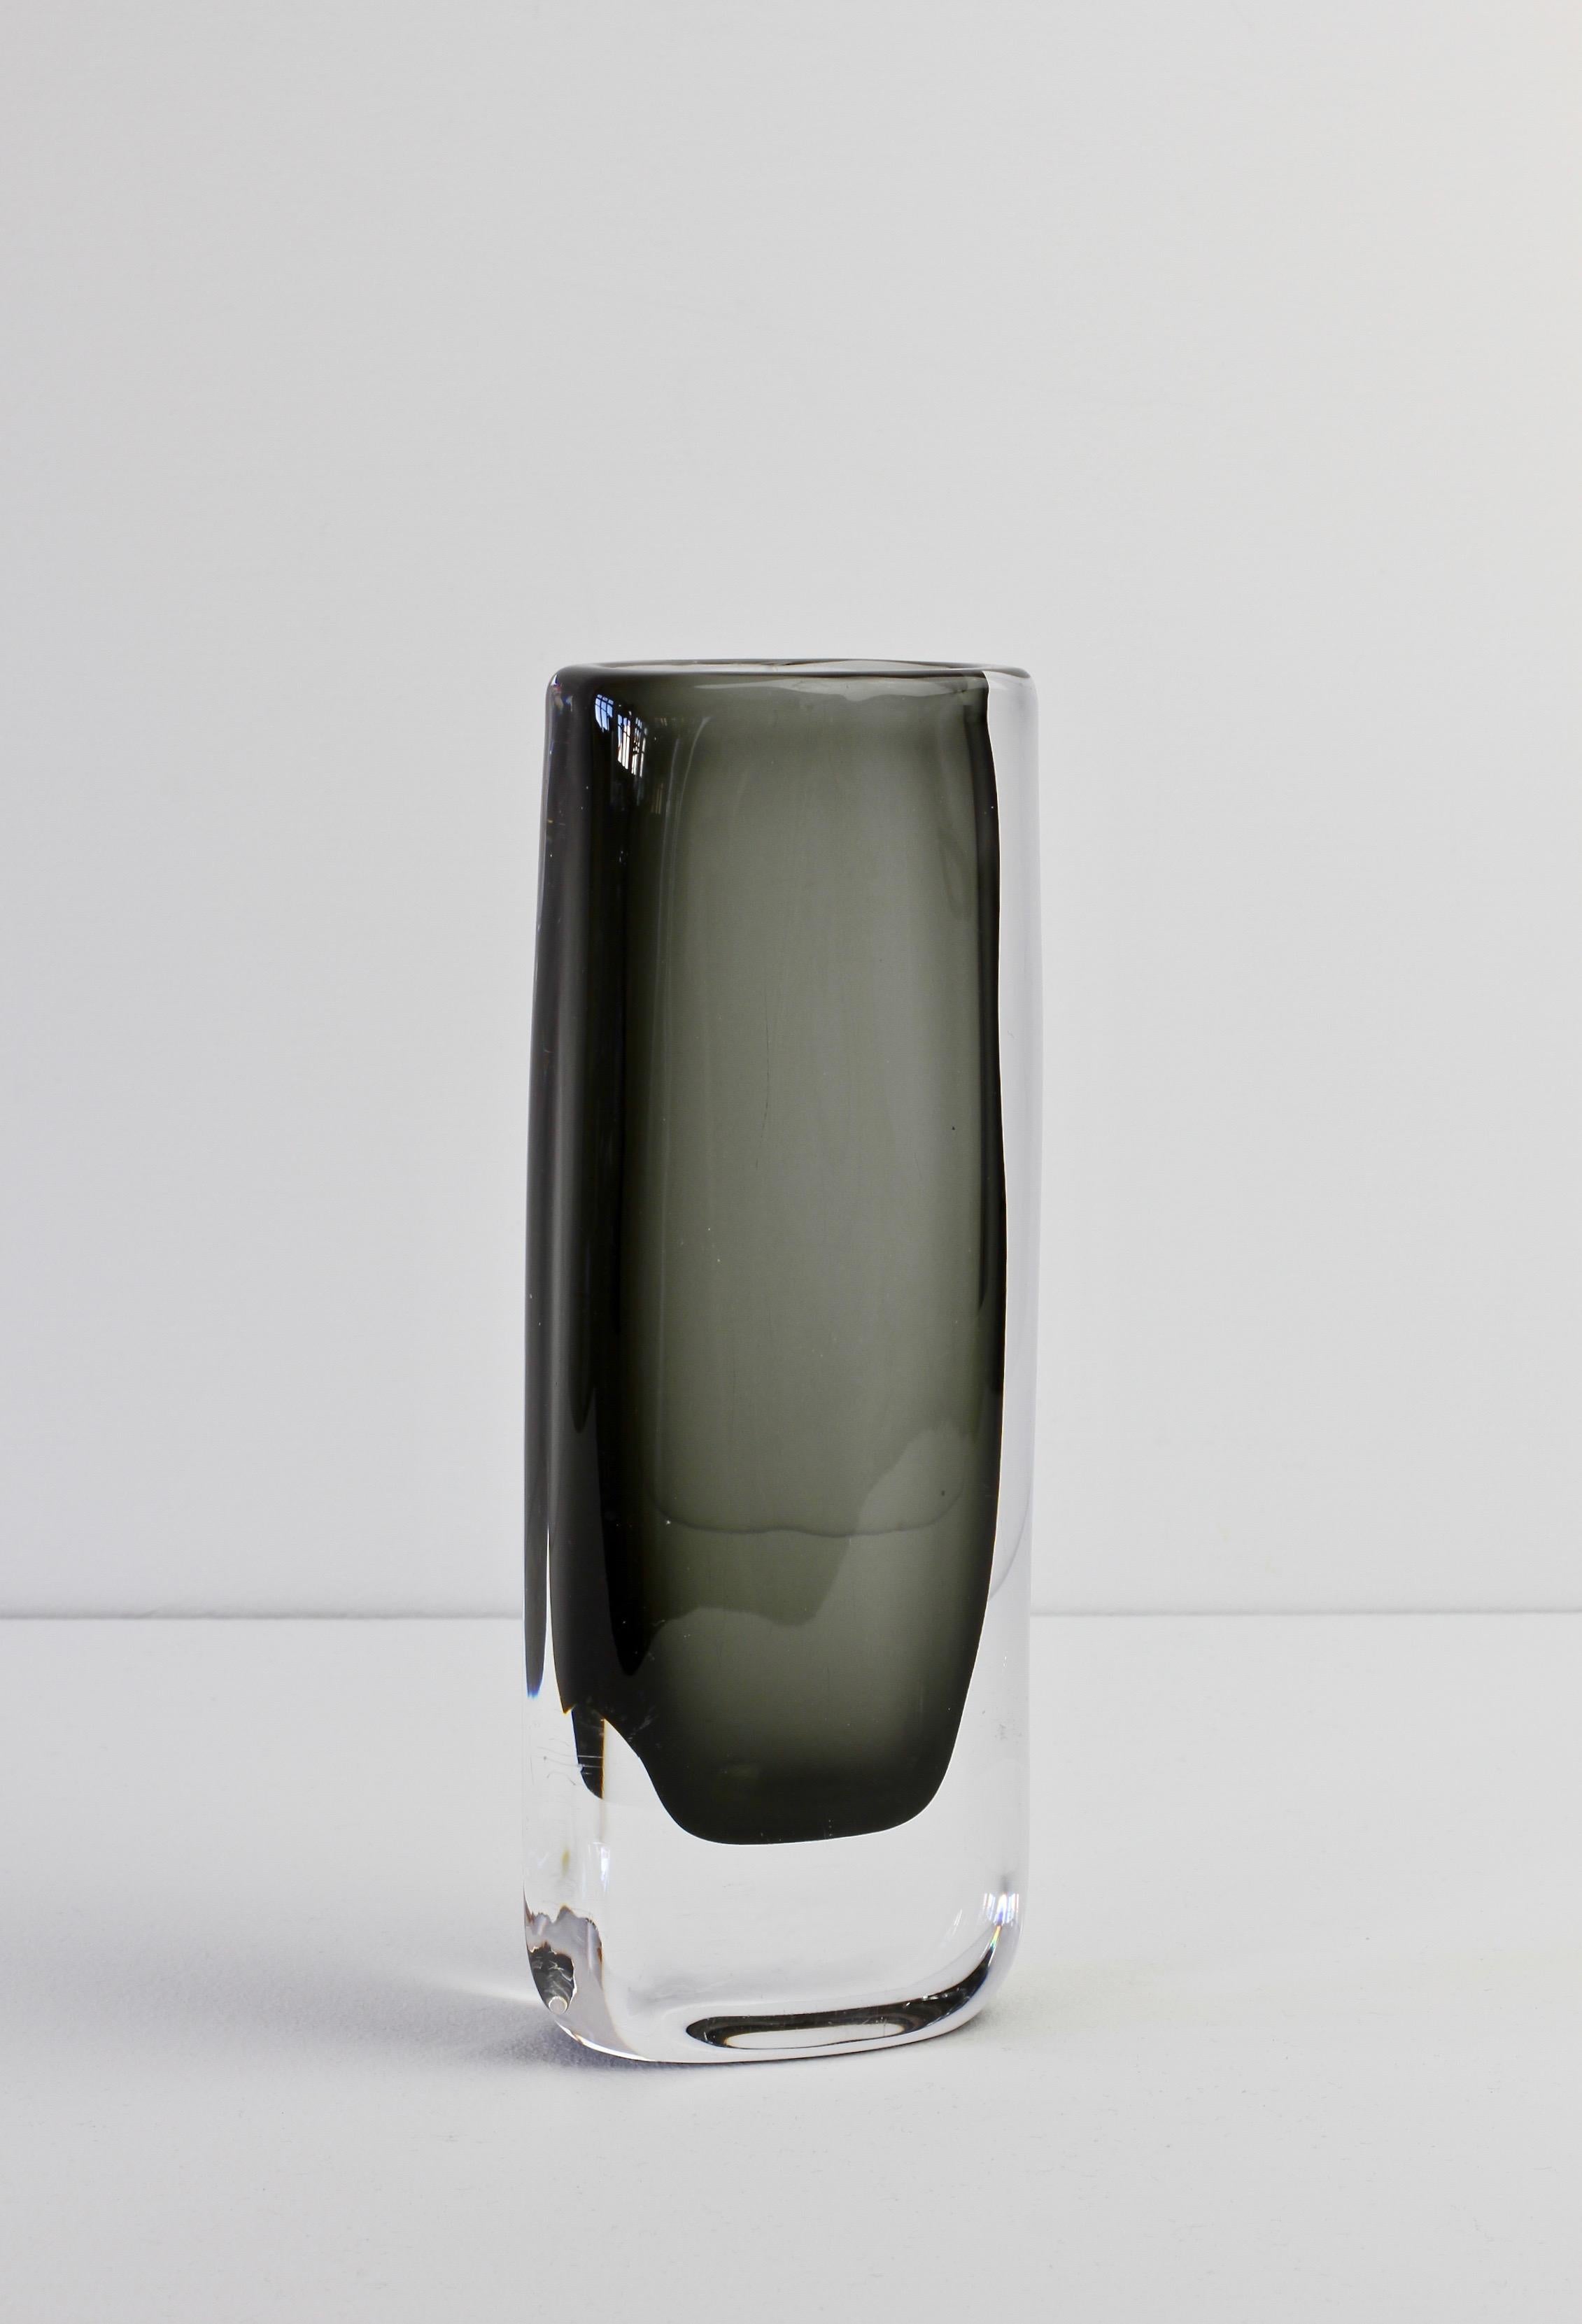 Tall 1950s Sommerso 'Dusk' Vase Signed by Nils Landberg for Orrefors Glass 4